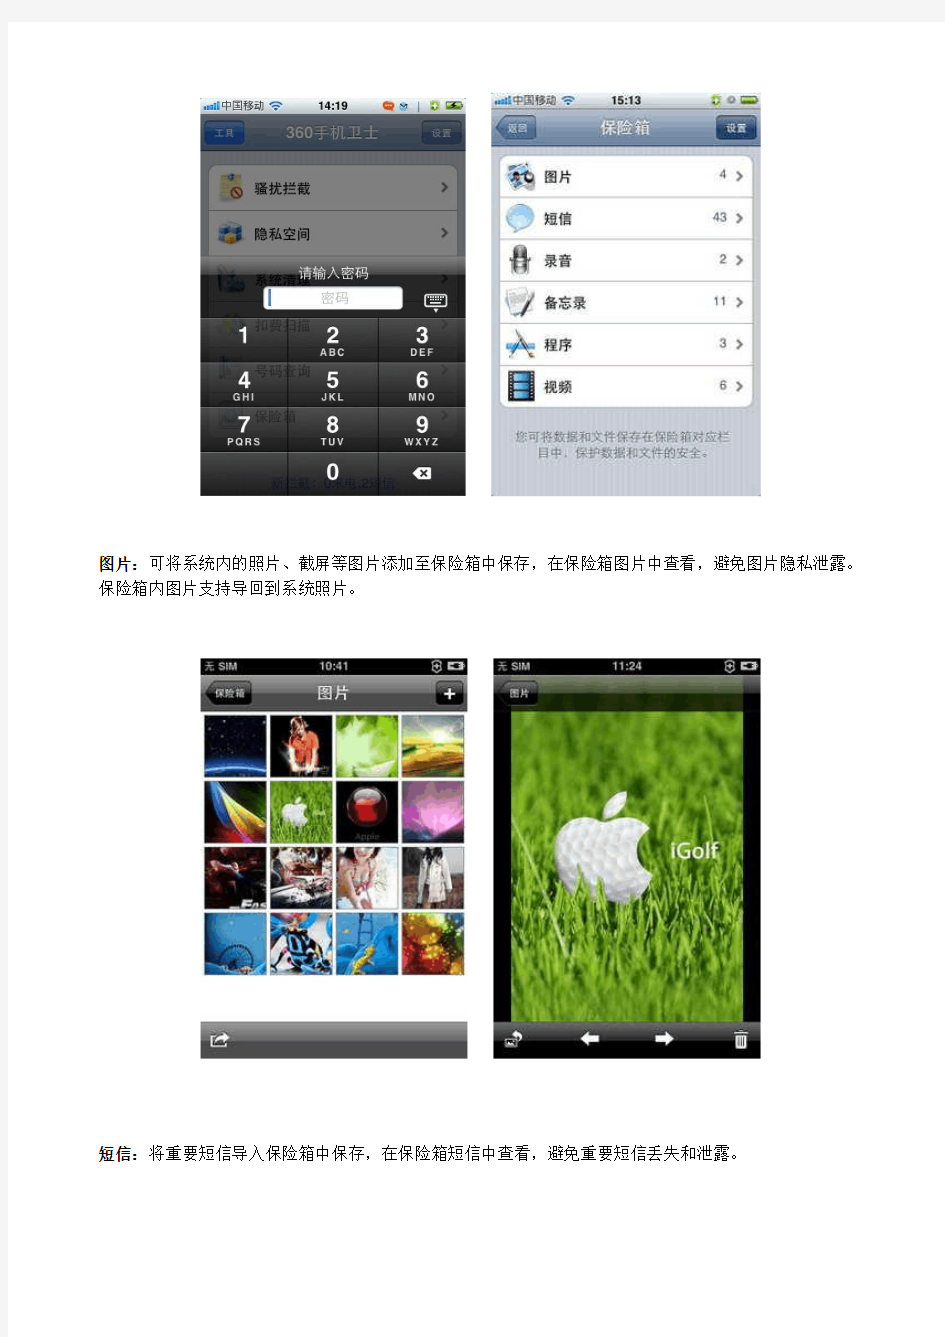 360手机卫士iPhoneV1.4.3正式版安装说明